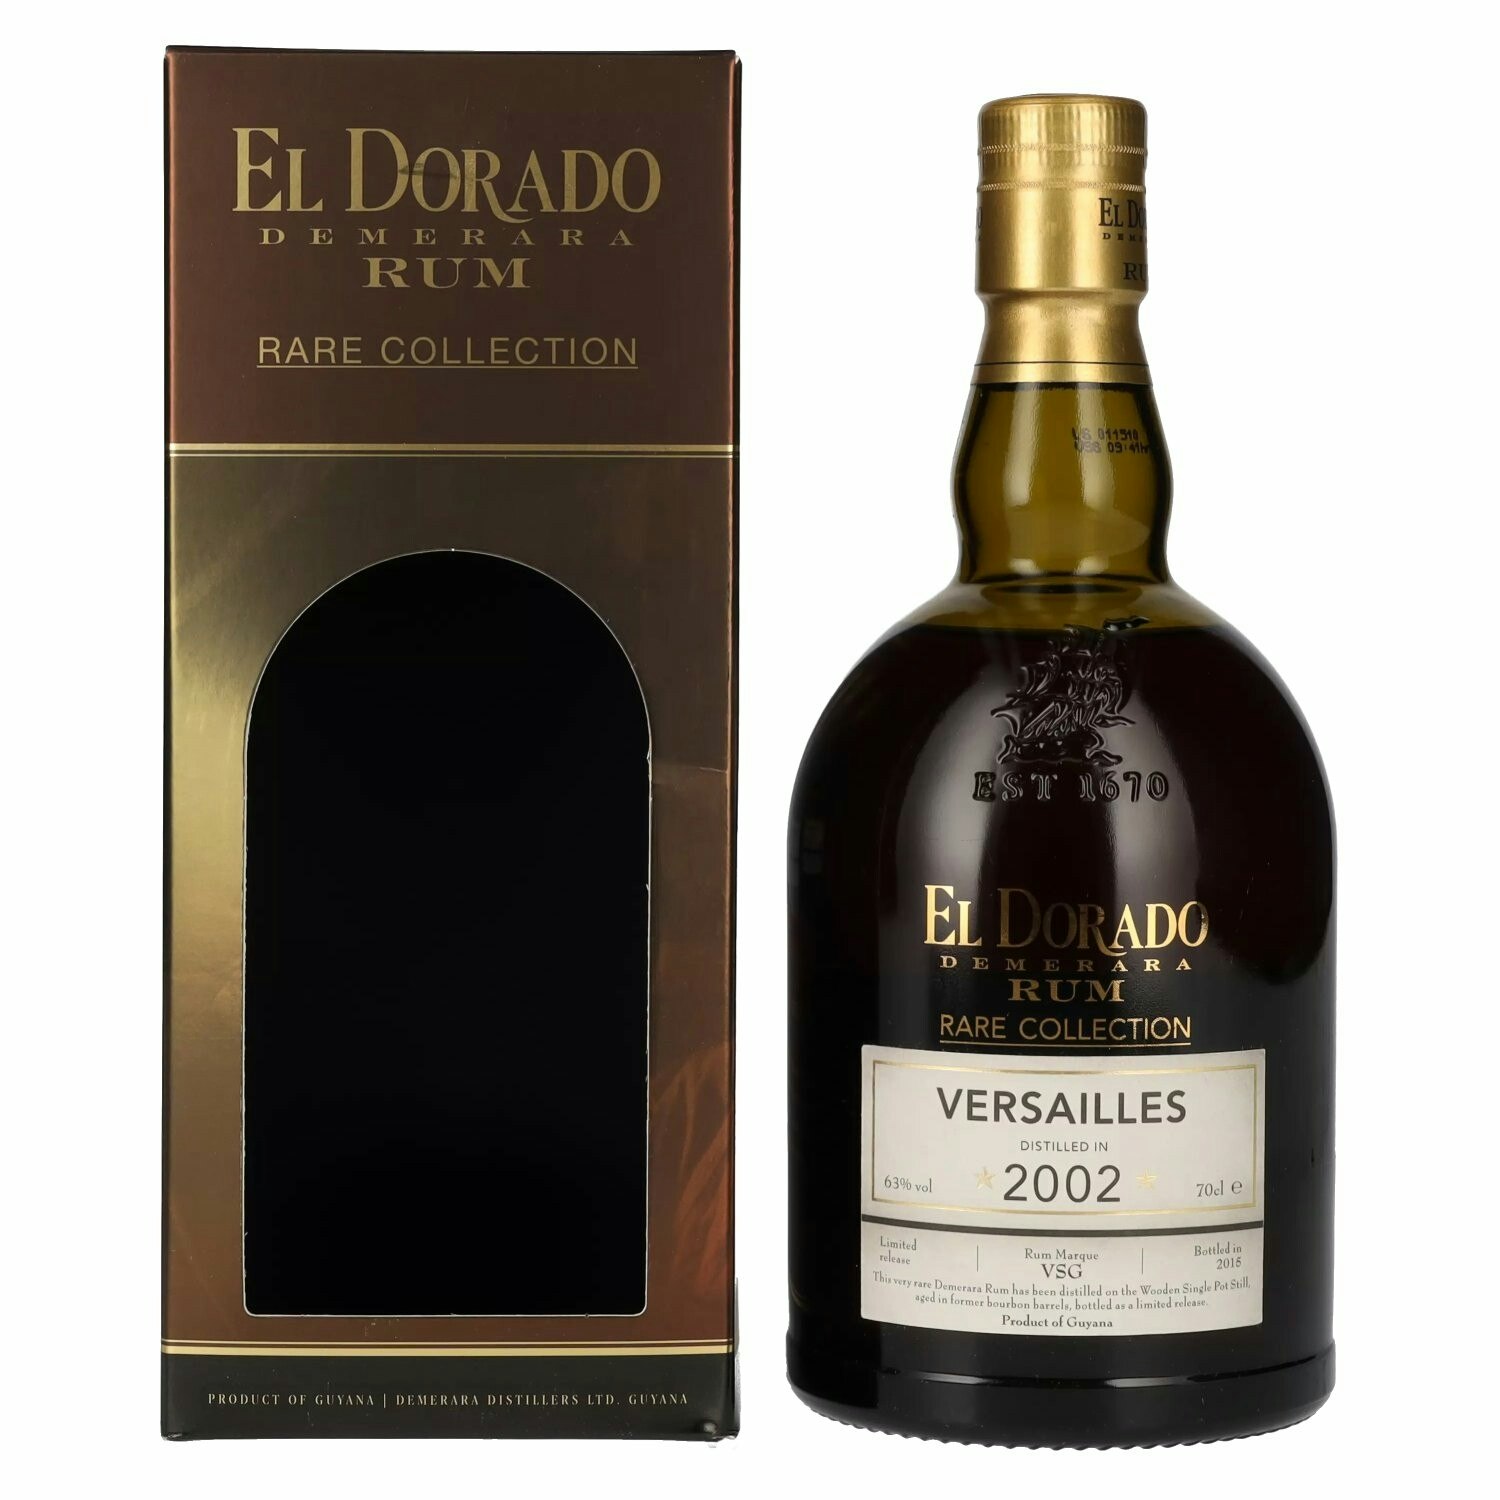 El Dorado VERSAILLES Demerara Rum RARE COLLECTION Limited Release 2002 63% Vol. 0,7l in Giftbox